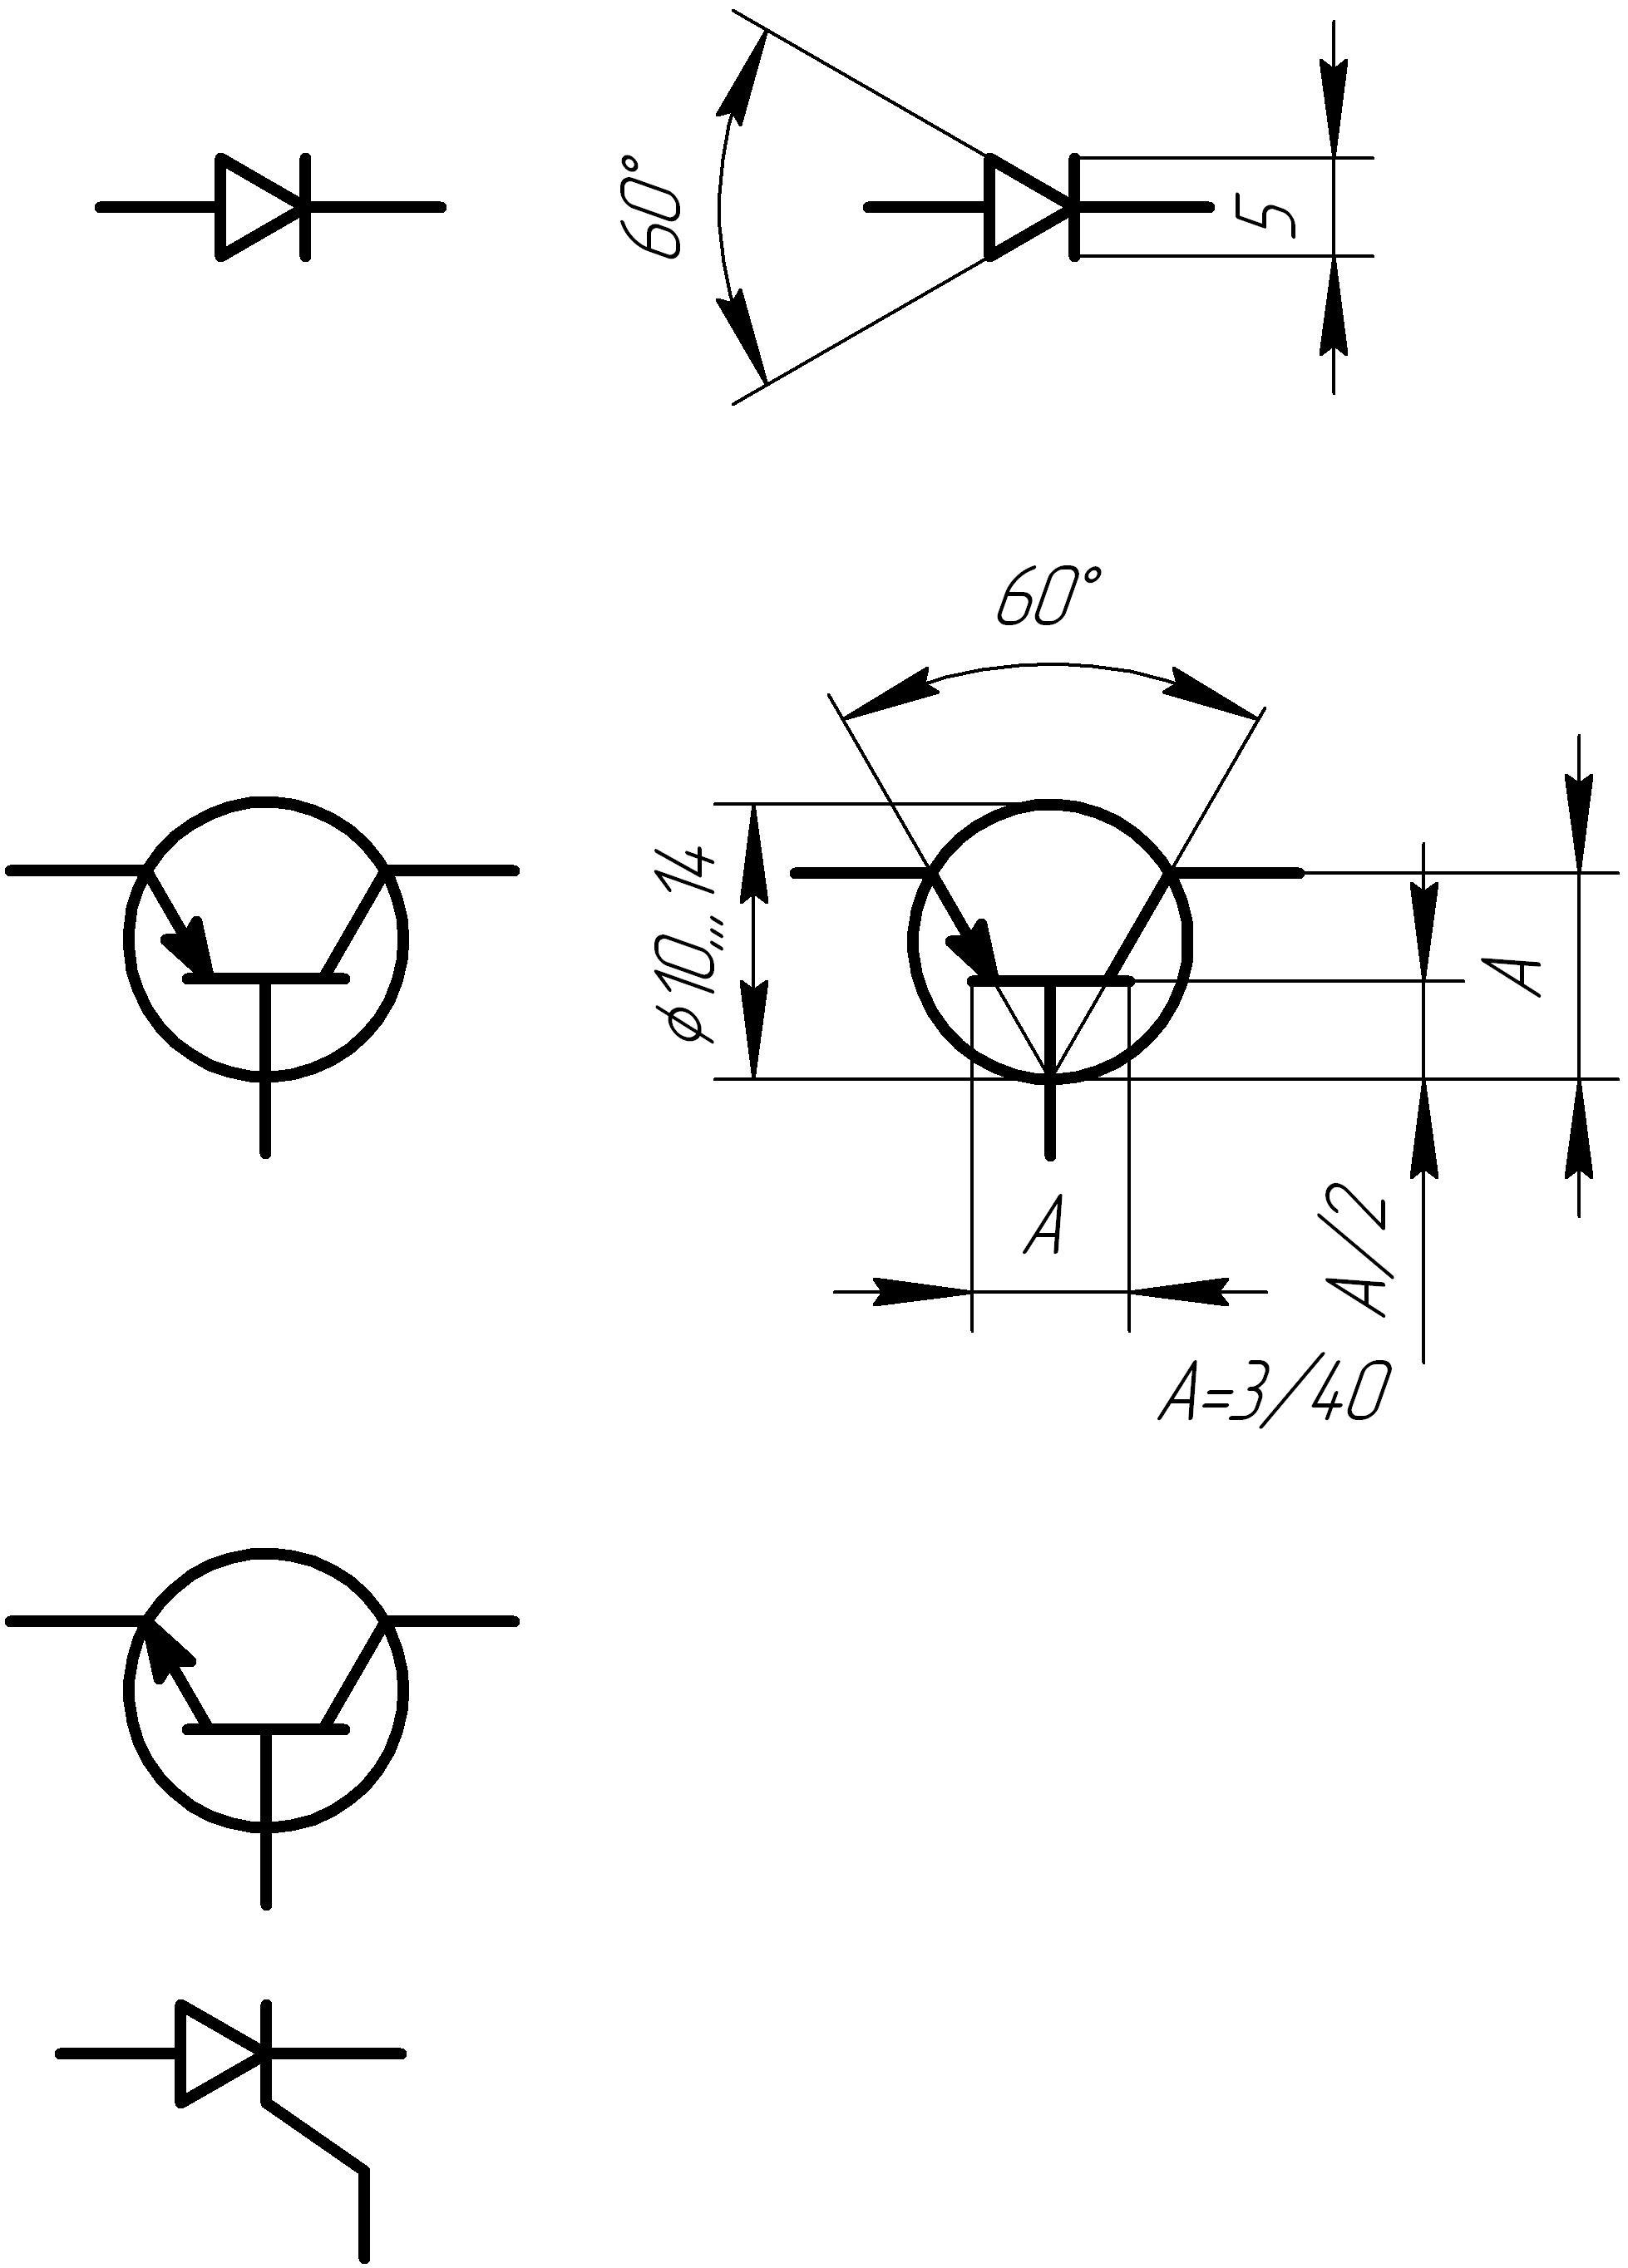 Полупроводниковый транзистор схема. Уго полупроводникового прибора транзистора. Транзистор Триод схема. Полупроводниковый Триод схема. Условные обозначения полупроводниковых приборов на схемах.